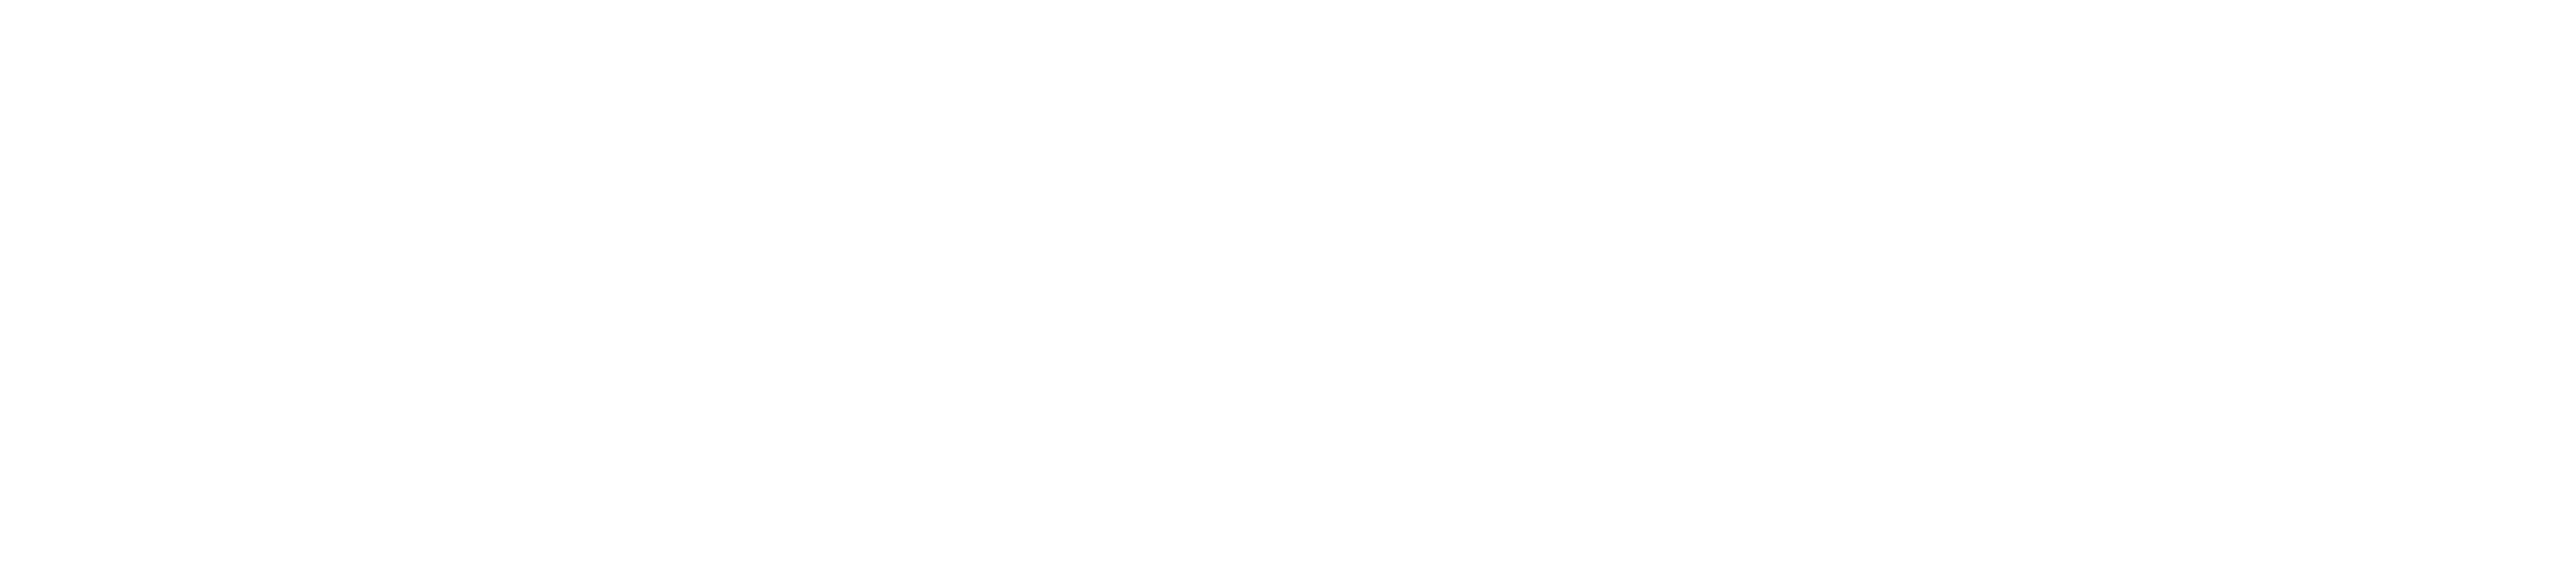 TM Private Seas